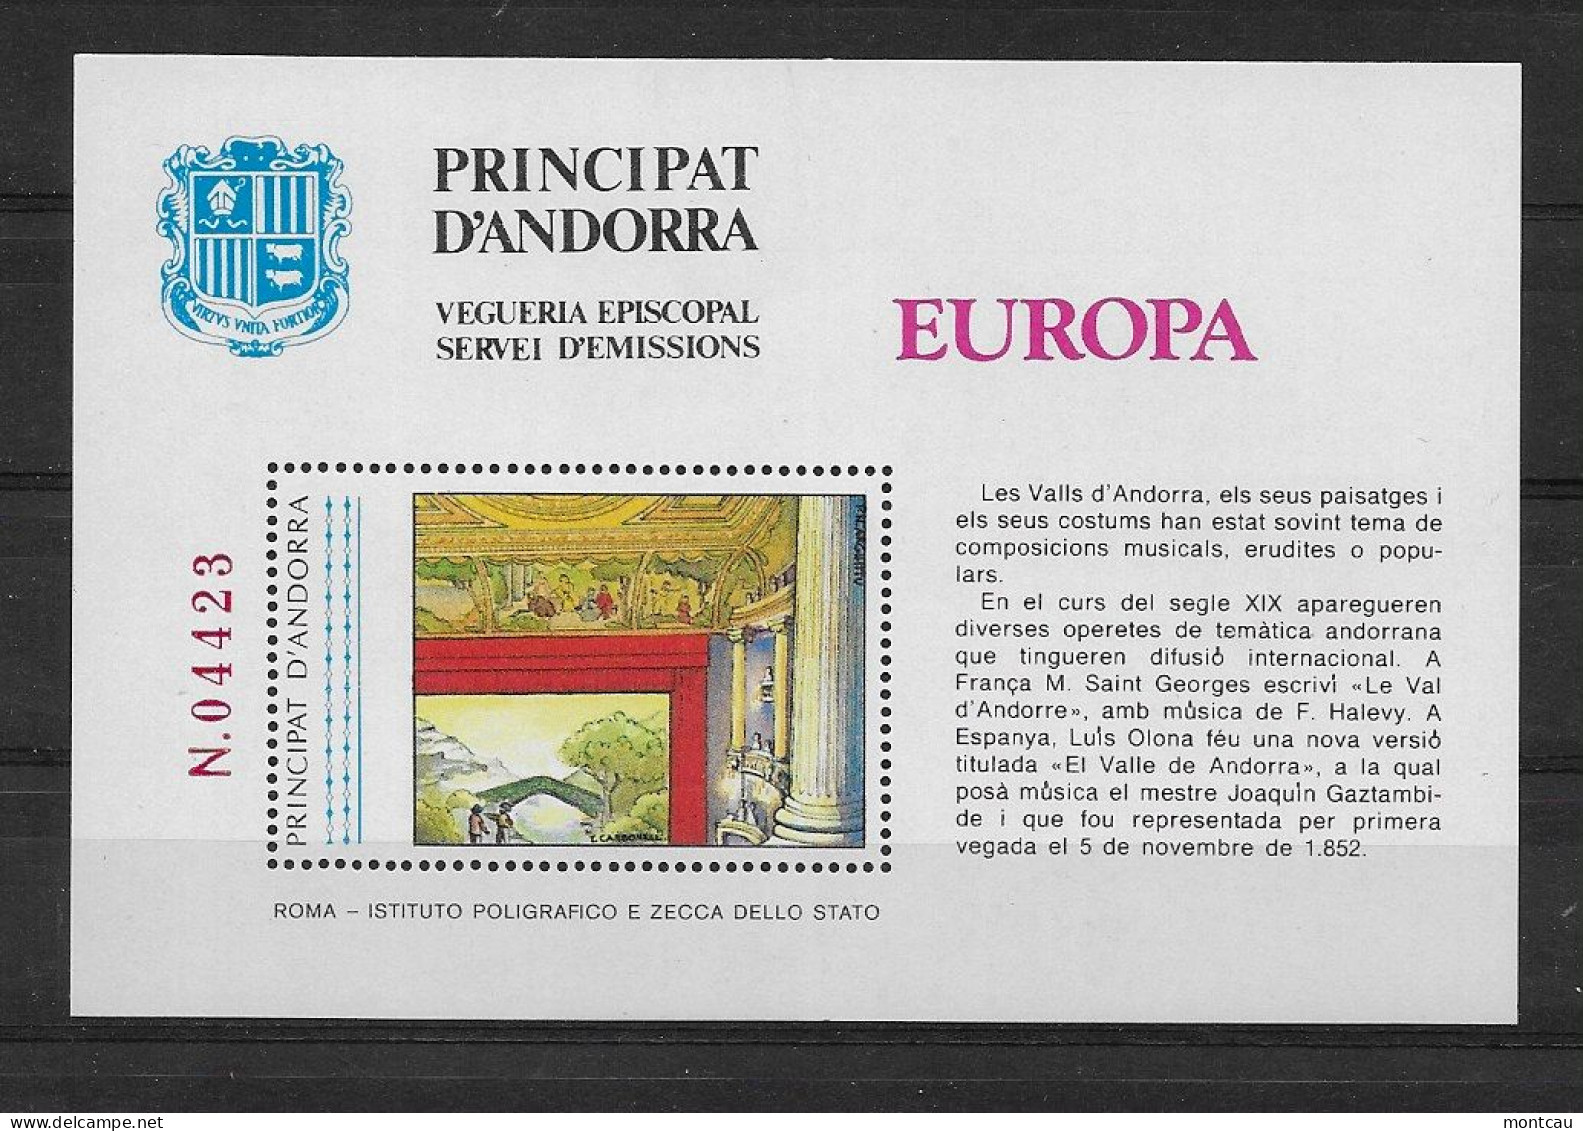 Andorra - 1985 - Vegueria Episcopal Europa - Episcopal Viguerie